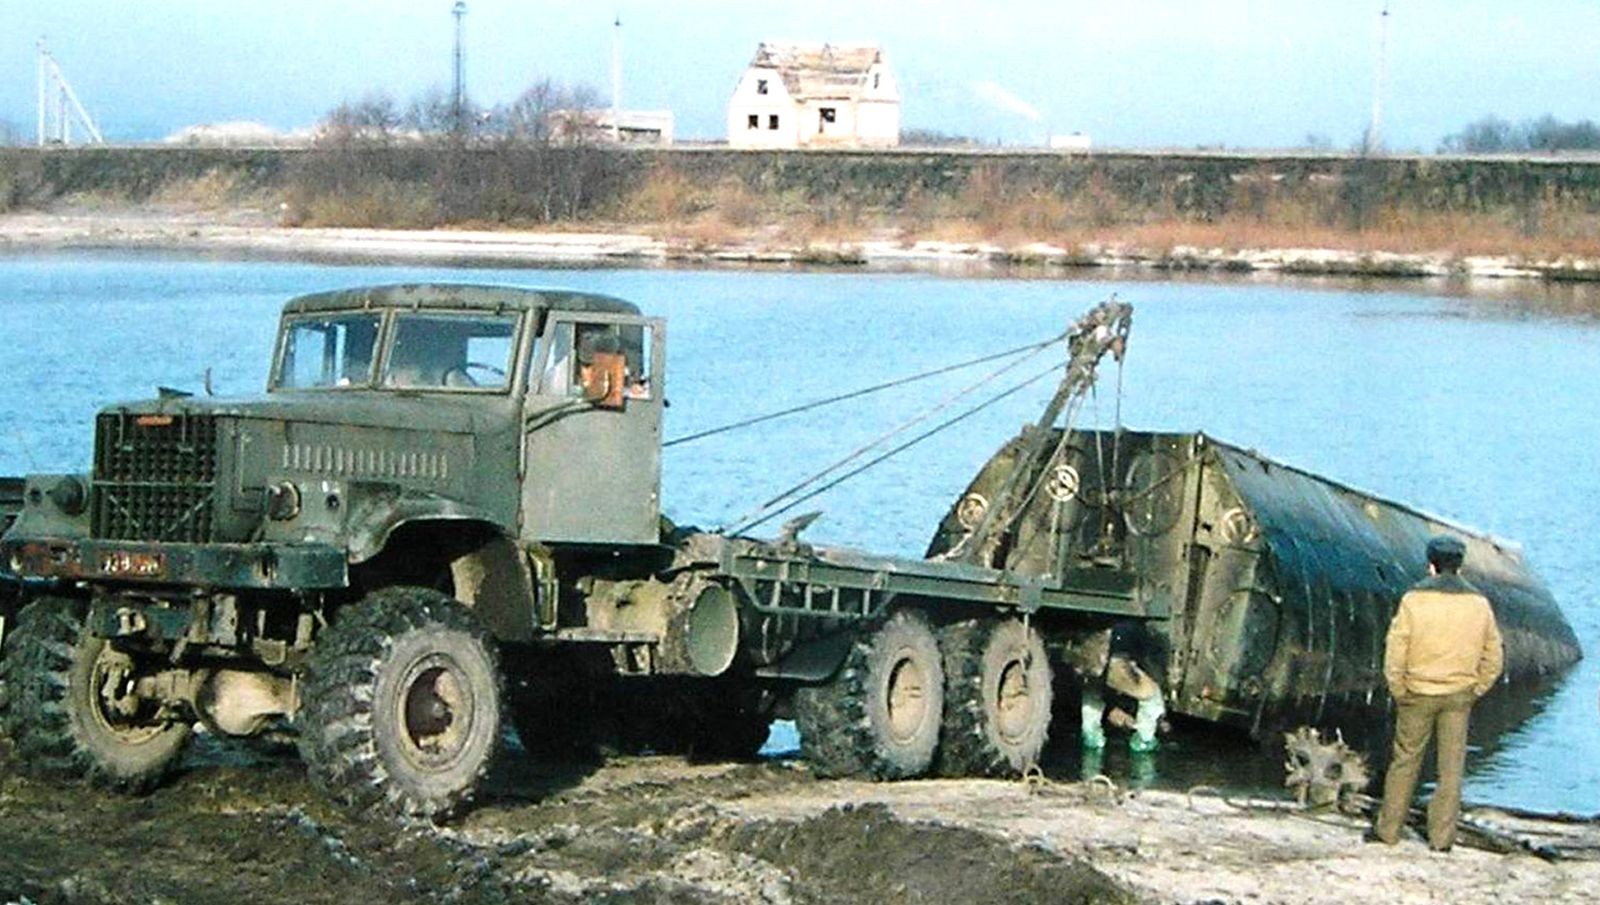 Мостоукладчик, сваезабиватель и даже гигантский пылесос: военные профессии КрАЗ-255